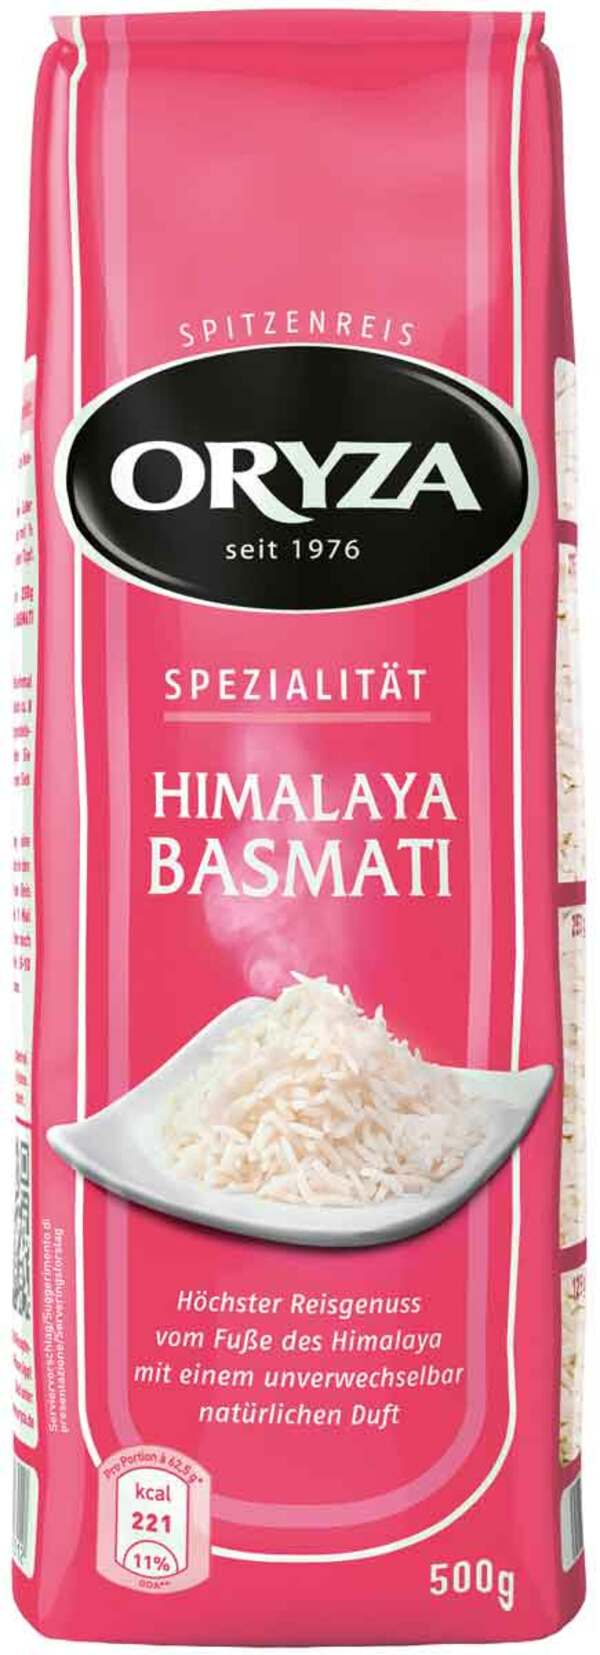 Bild 1 von Oryza Himalaya Basmati Reis lose 500G